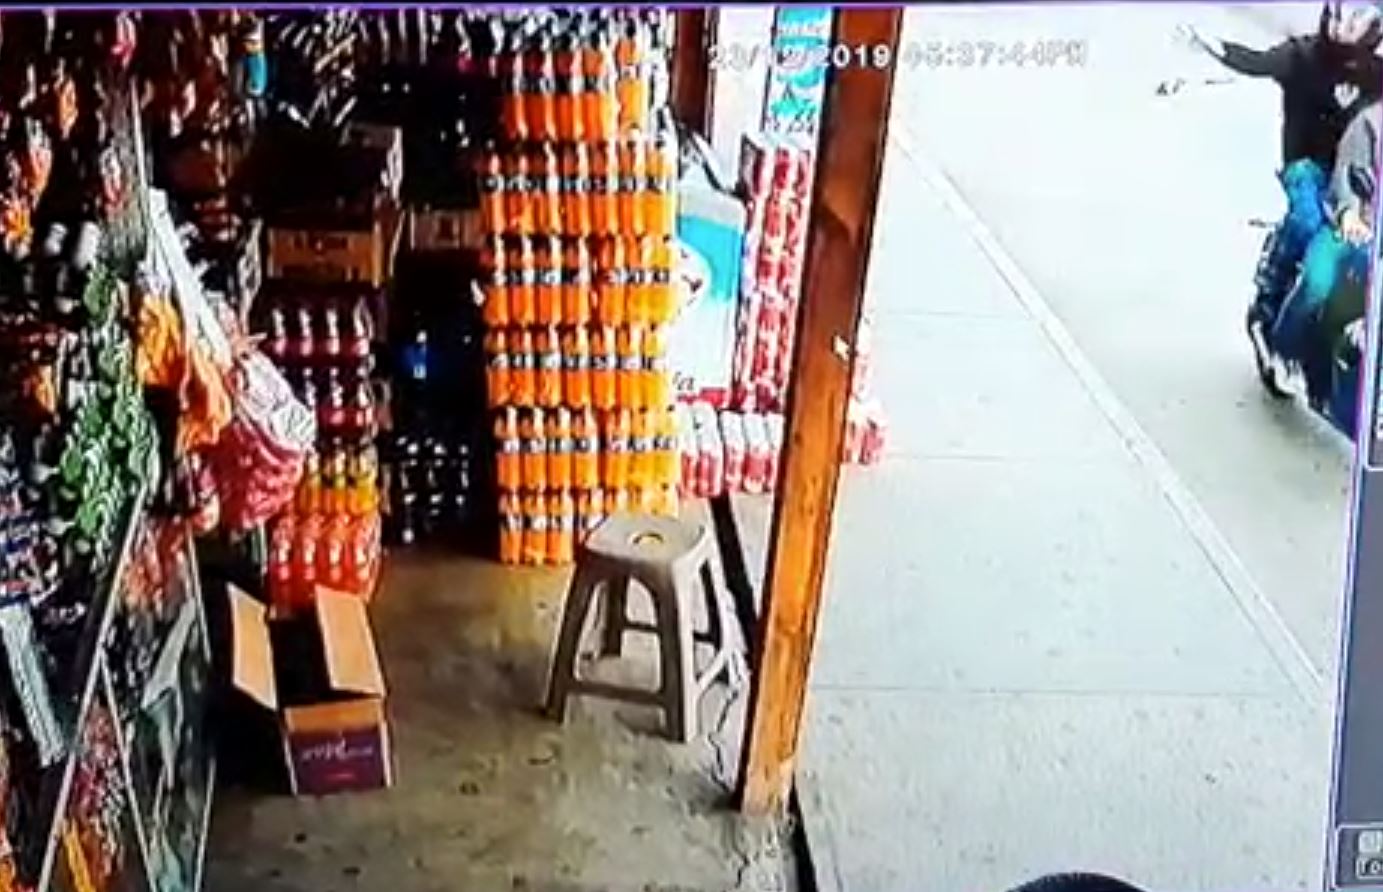 Desconocidos a bordo de una motocicleta lanzaron la granada a una tienda ubicada en ruta al Atlántico. (Foto Prensa Libre: captura de pantalla)